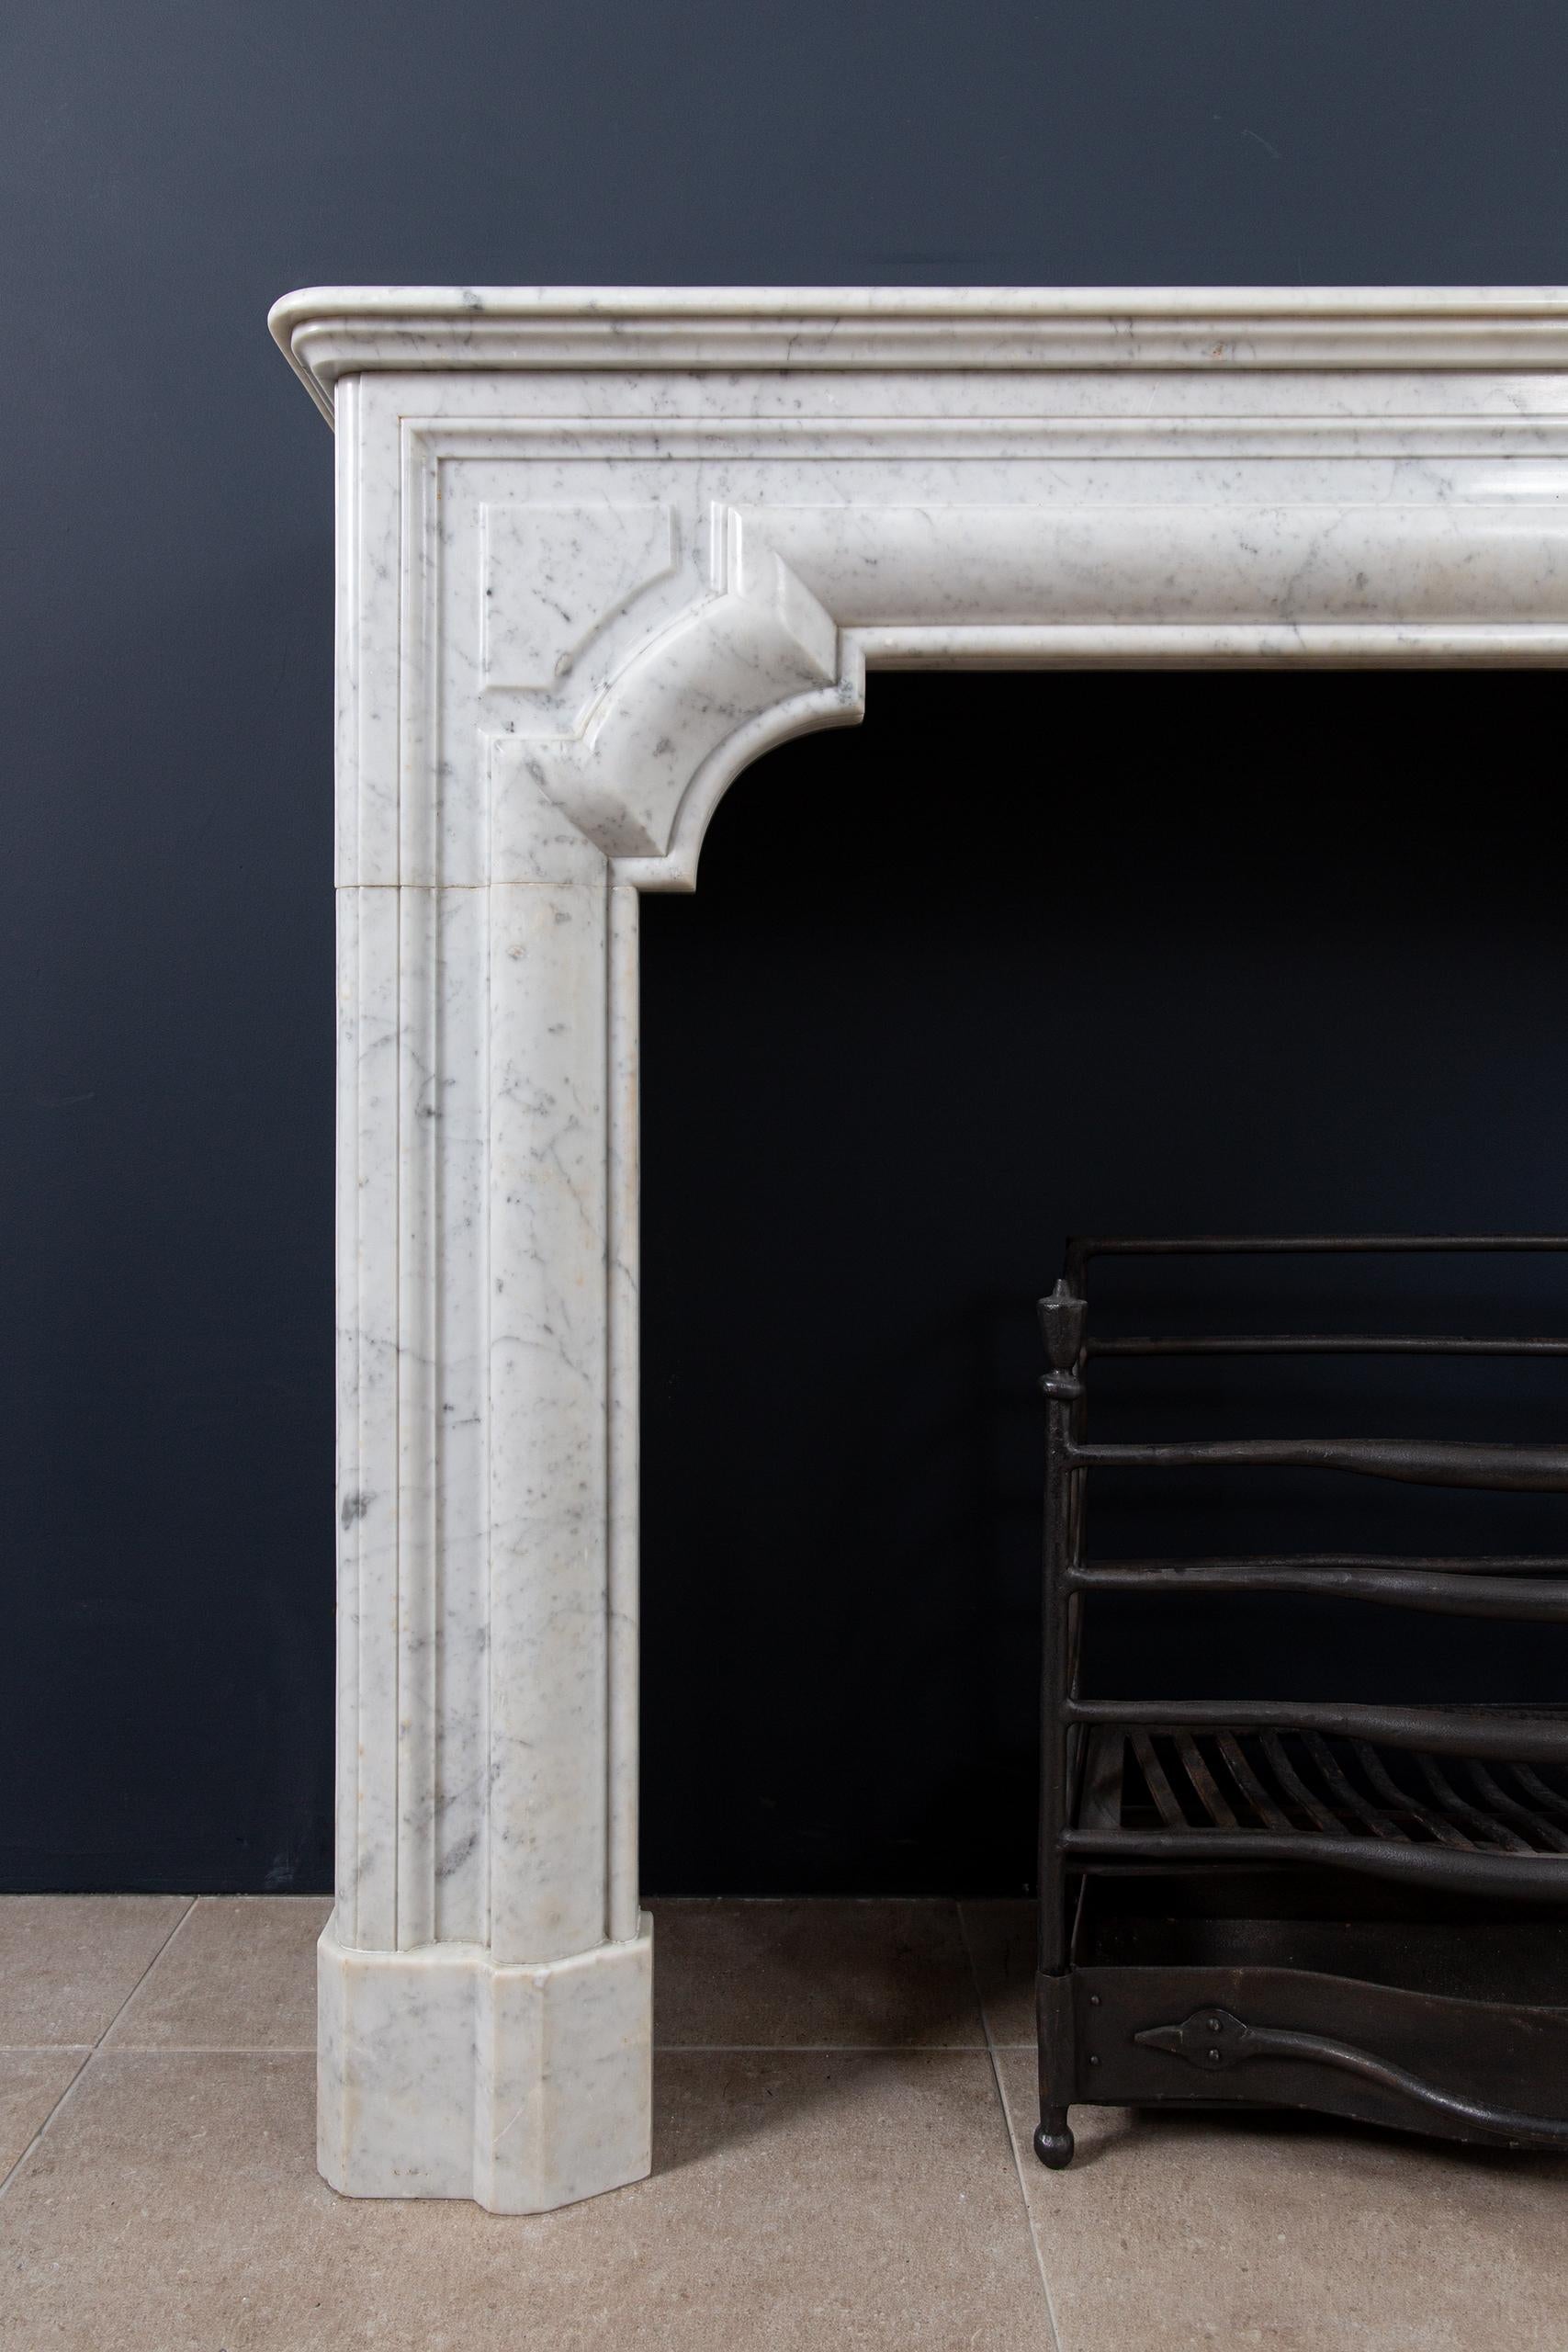 Une belle cheminée française de style antique Bolection en marbre de Carrara. Ce style de cheminées se caractérise par un bord de fraisage rond et continu. Cela continue depuis les consoles jusqu'à l'avant. L'épaisseur du marbre donne à cette